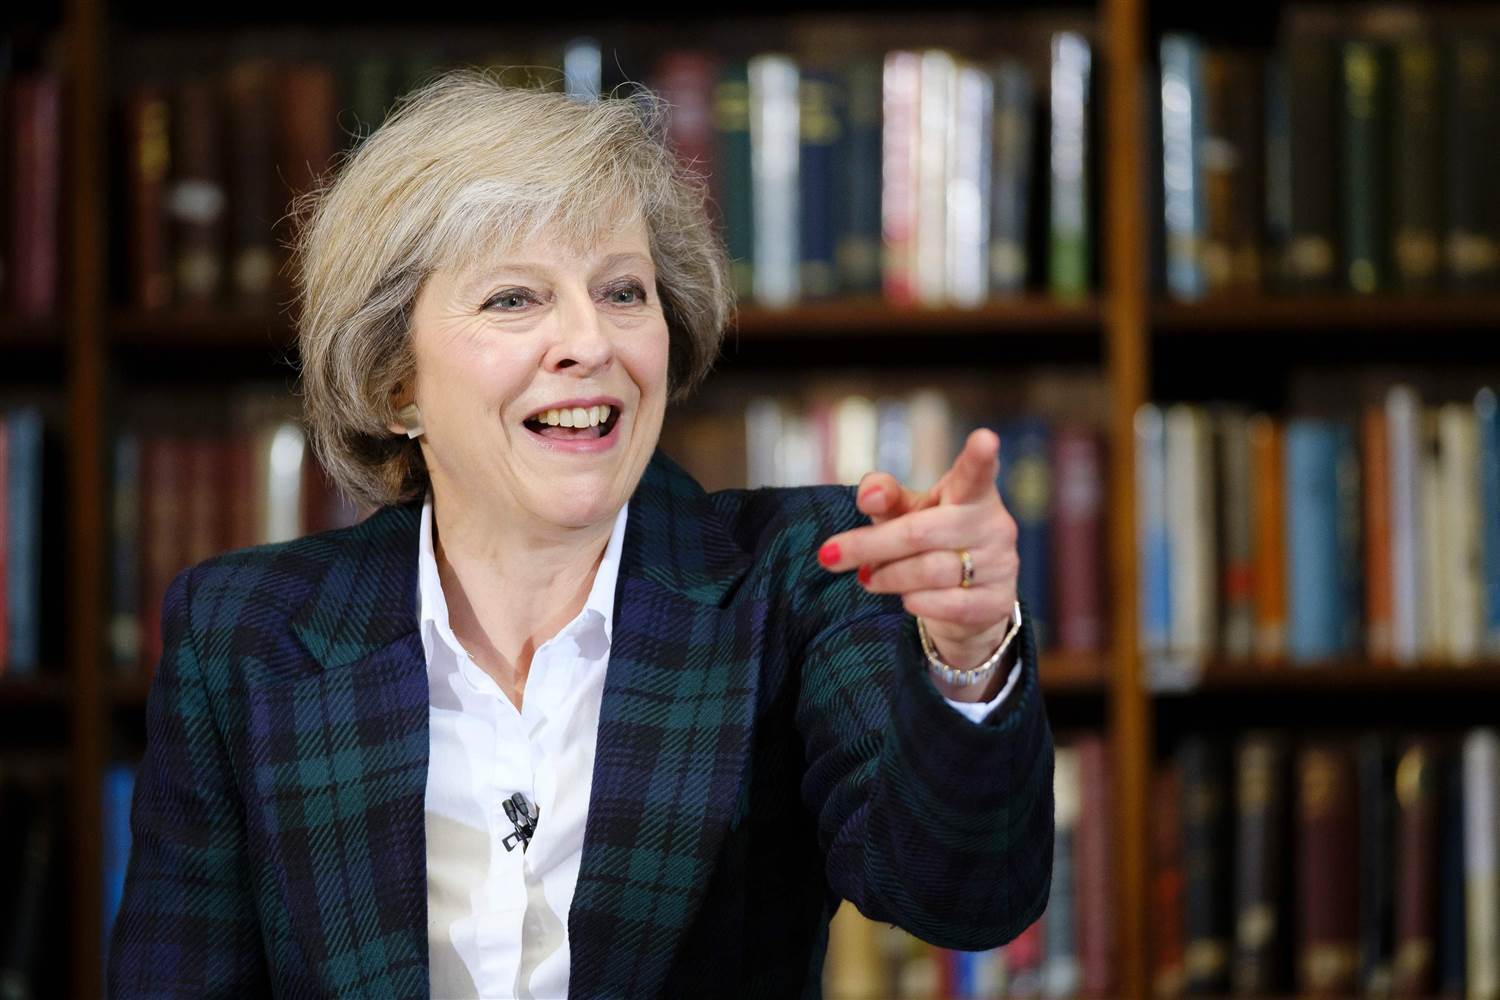 撒切尔夫人后,特蕾莎梅(Theresa May)将成英国